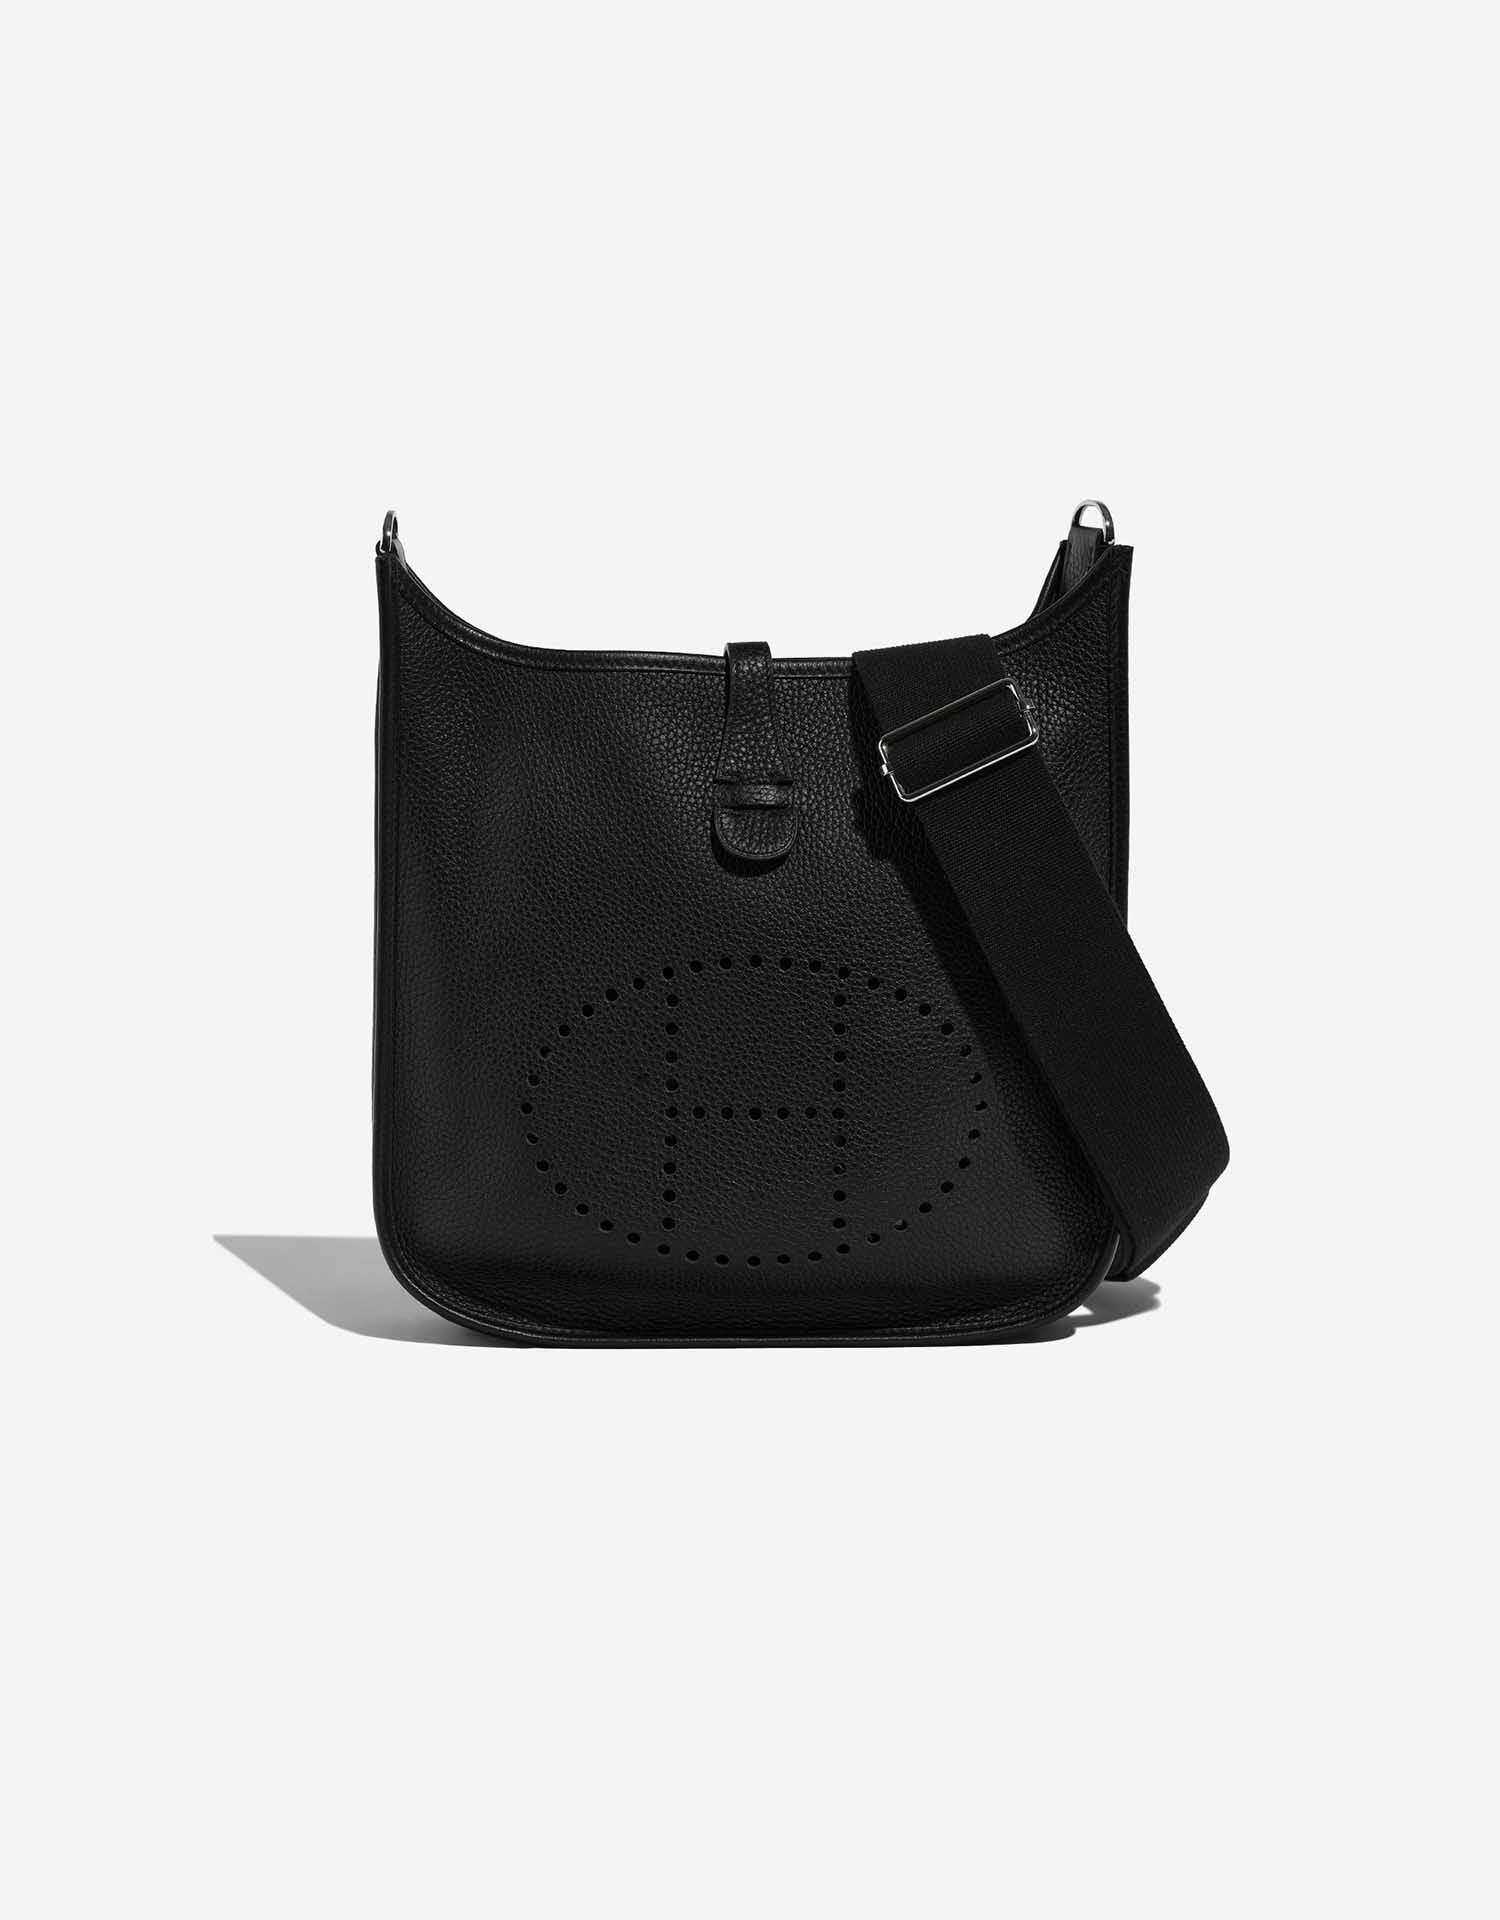 New in: Black Hermès Evelyn Bag. Shop now at SECONDELLA!